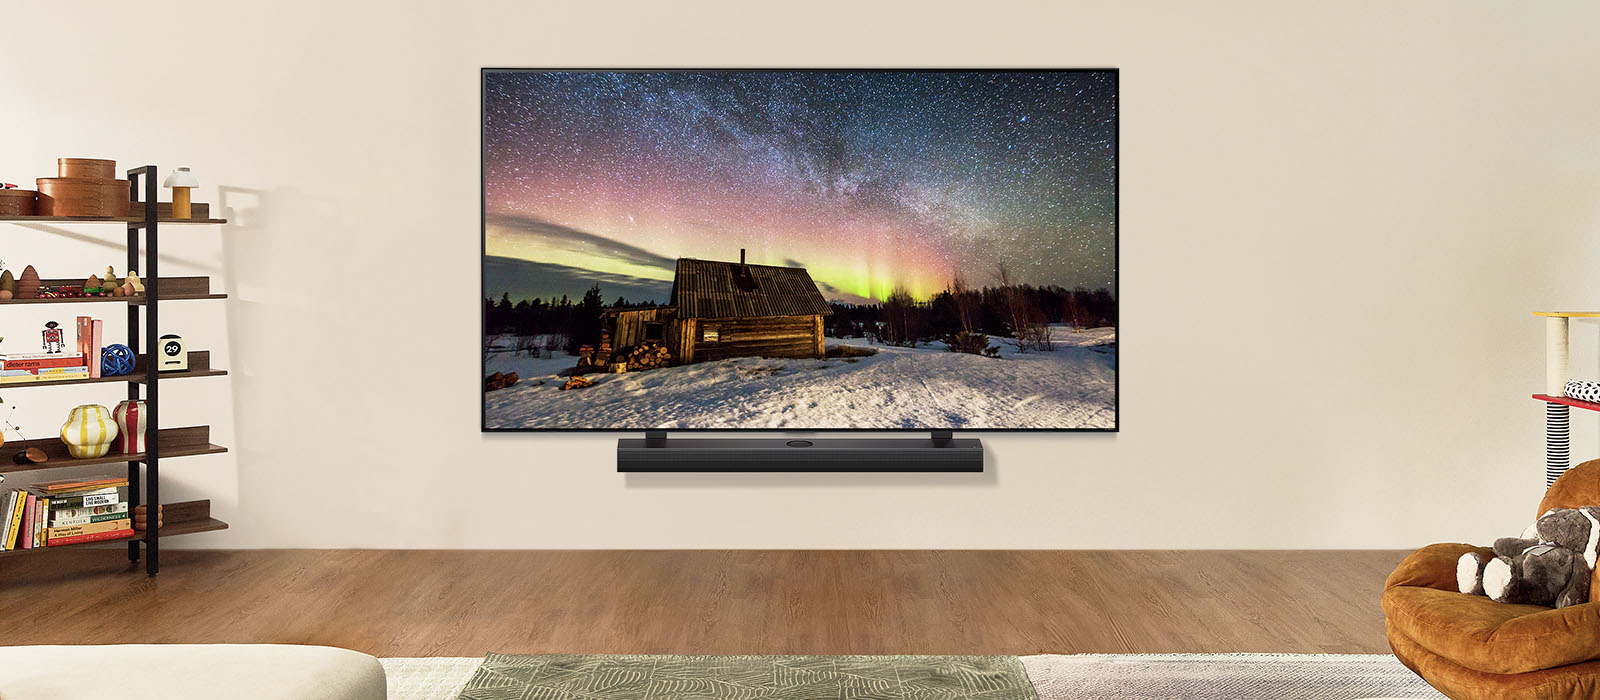 LG TV og LG Soundbar i et moderne oppholdsrom på dagtid. Skjermbilde som viser nordlys med de ideelle lysstyrkenivåene.